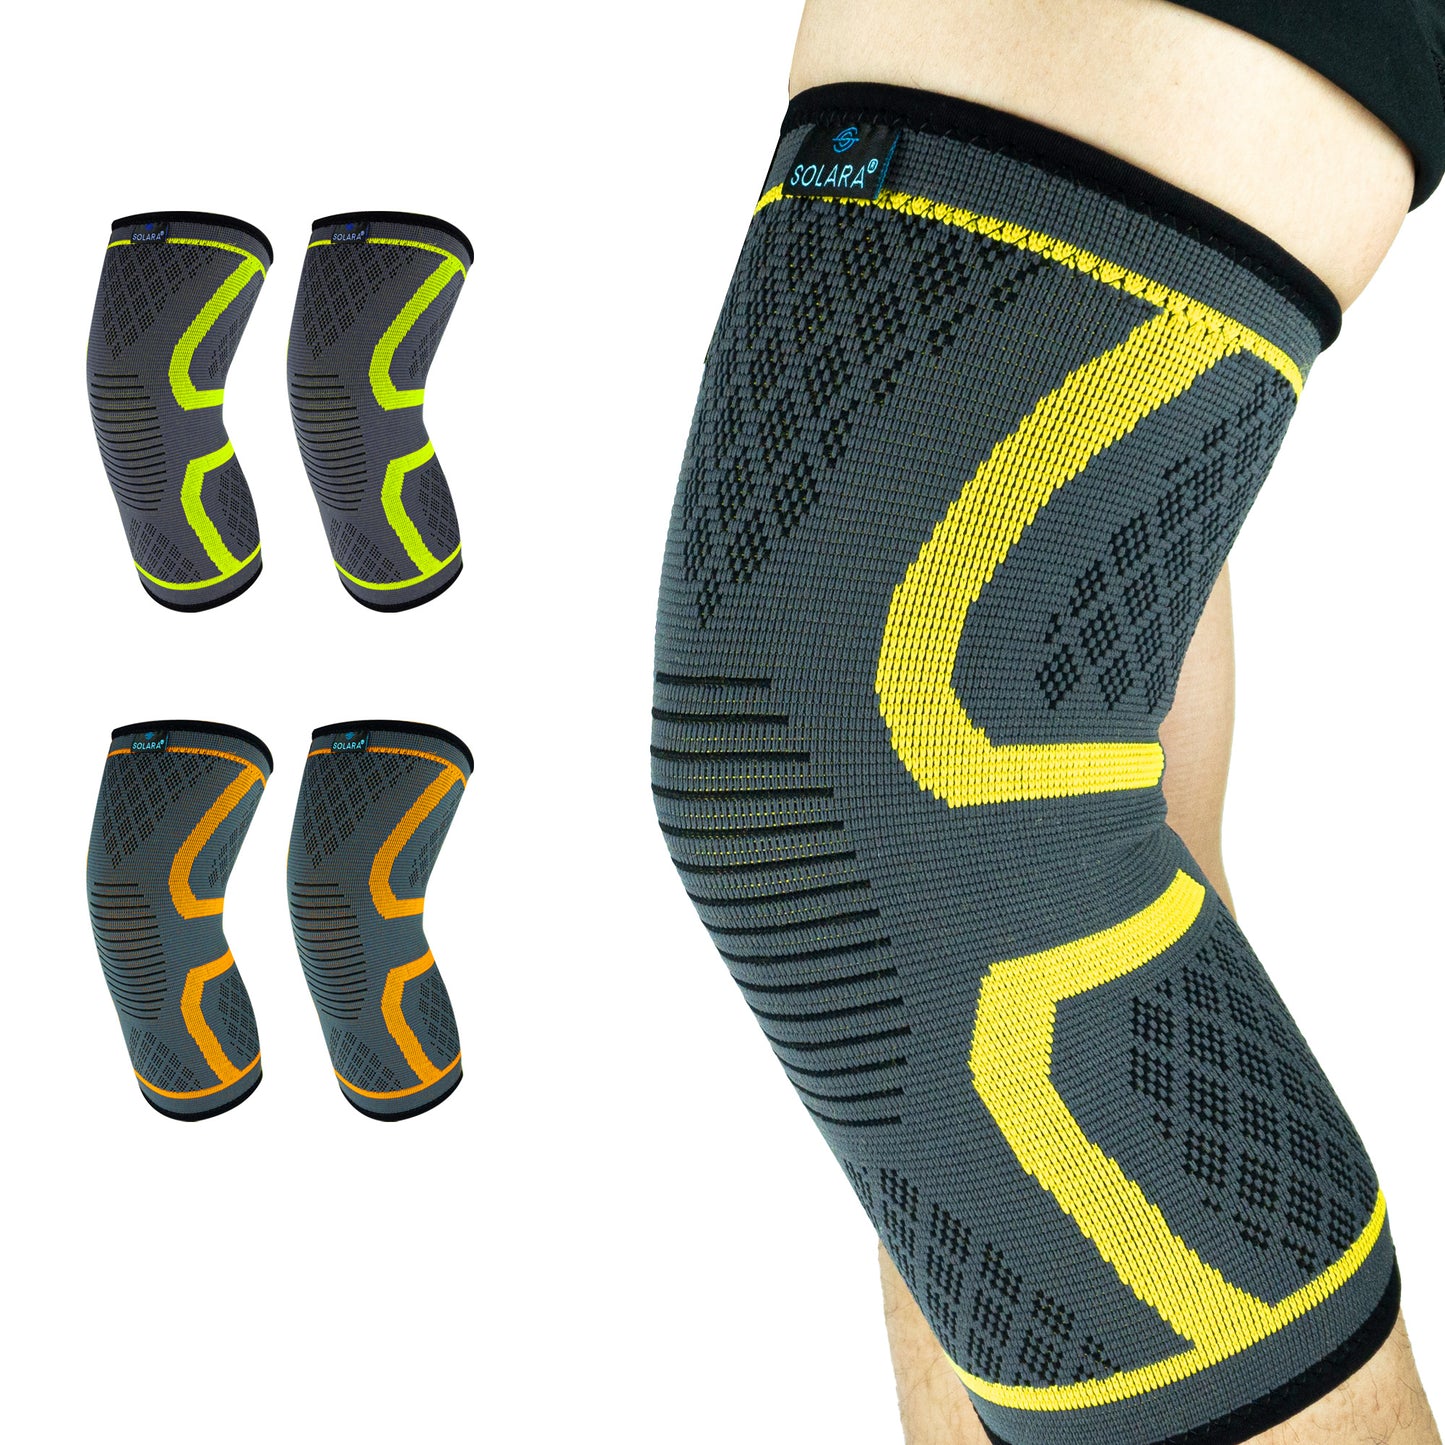 SOLARA Knee Cap for Men & Women | Knee Support for Gym